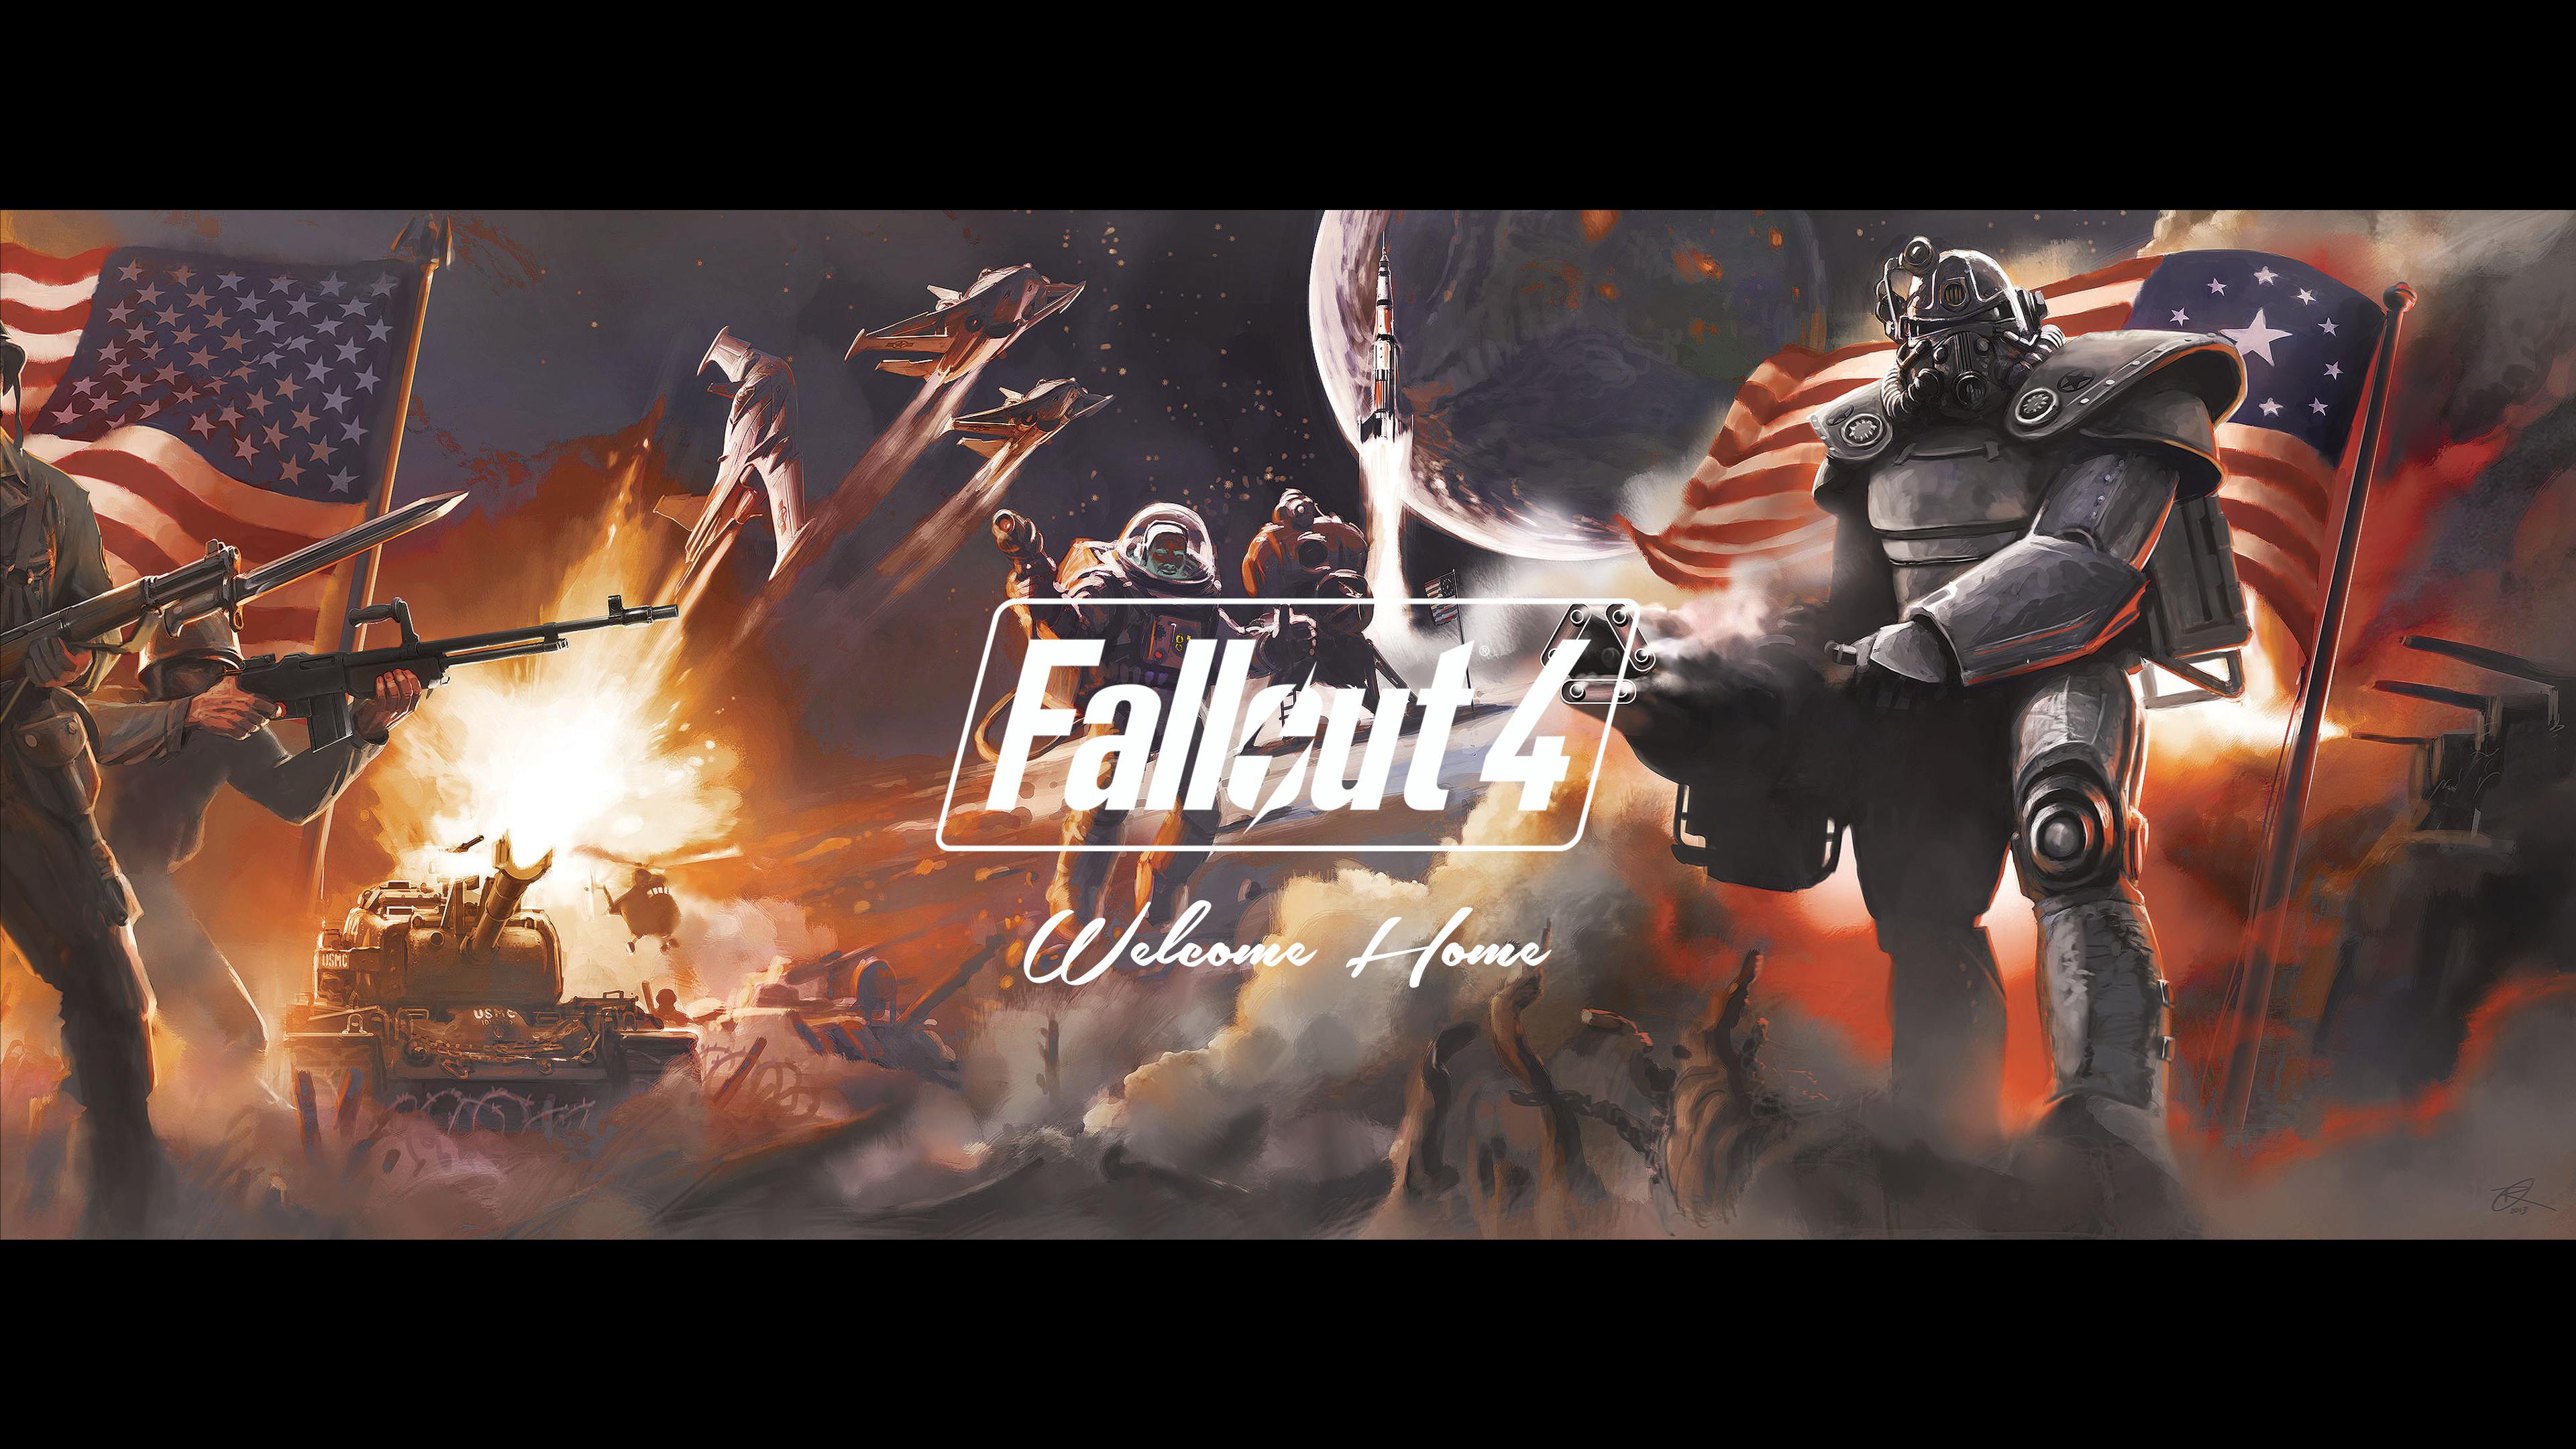 Fallout Puter Wallpaper